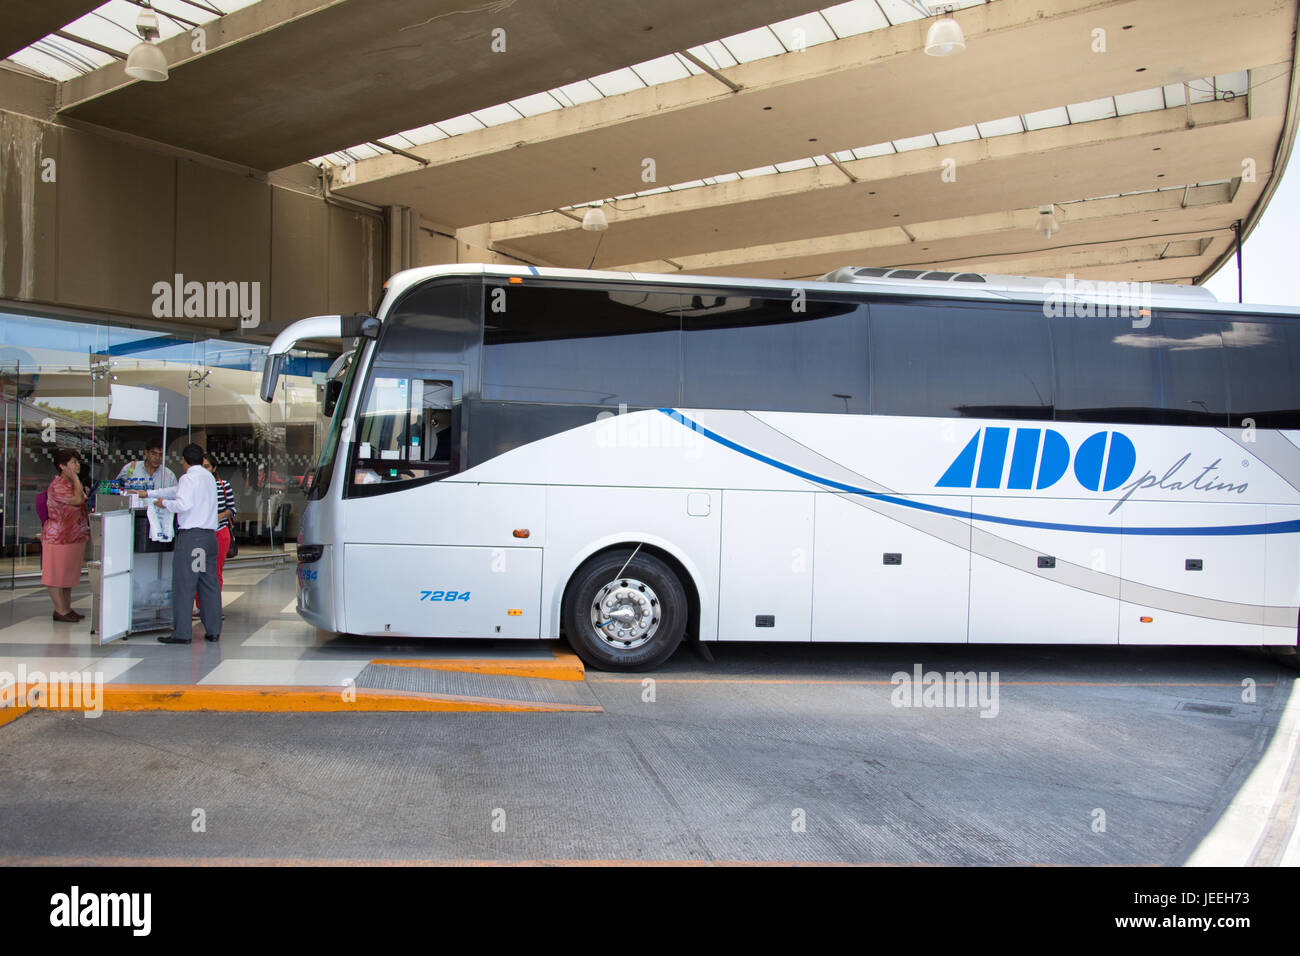 ADO Platinum bus in TAPO, Terminal de Autobuses de Pasajeros de Oriente or Eastern Passenger Bus Terminal, Mexico City, Mexico Stock Photo